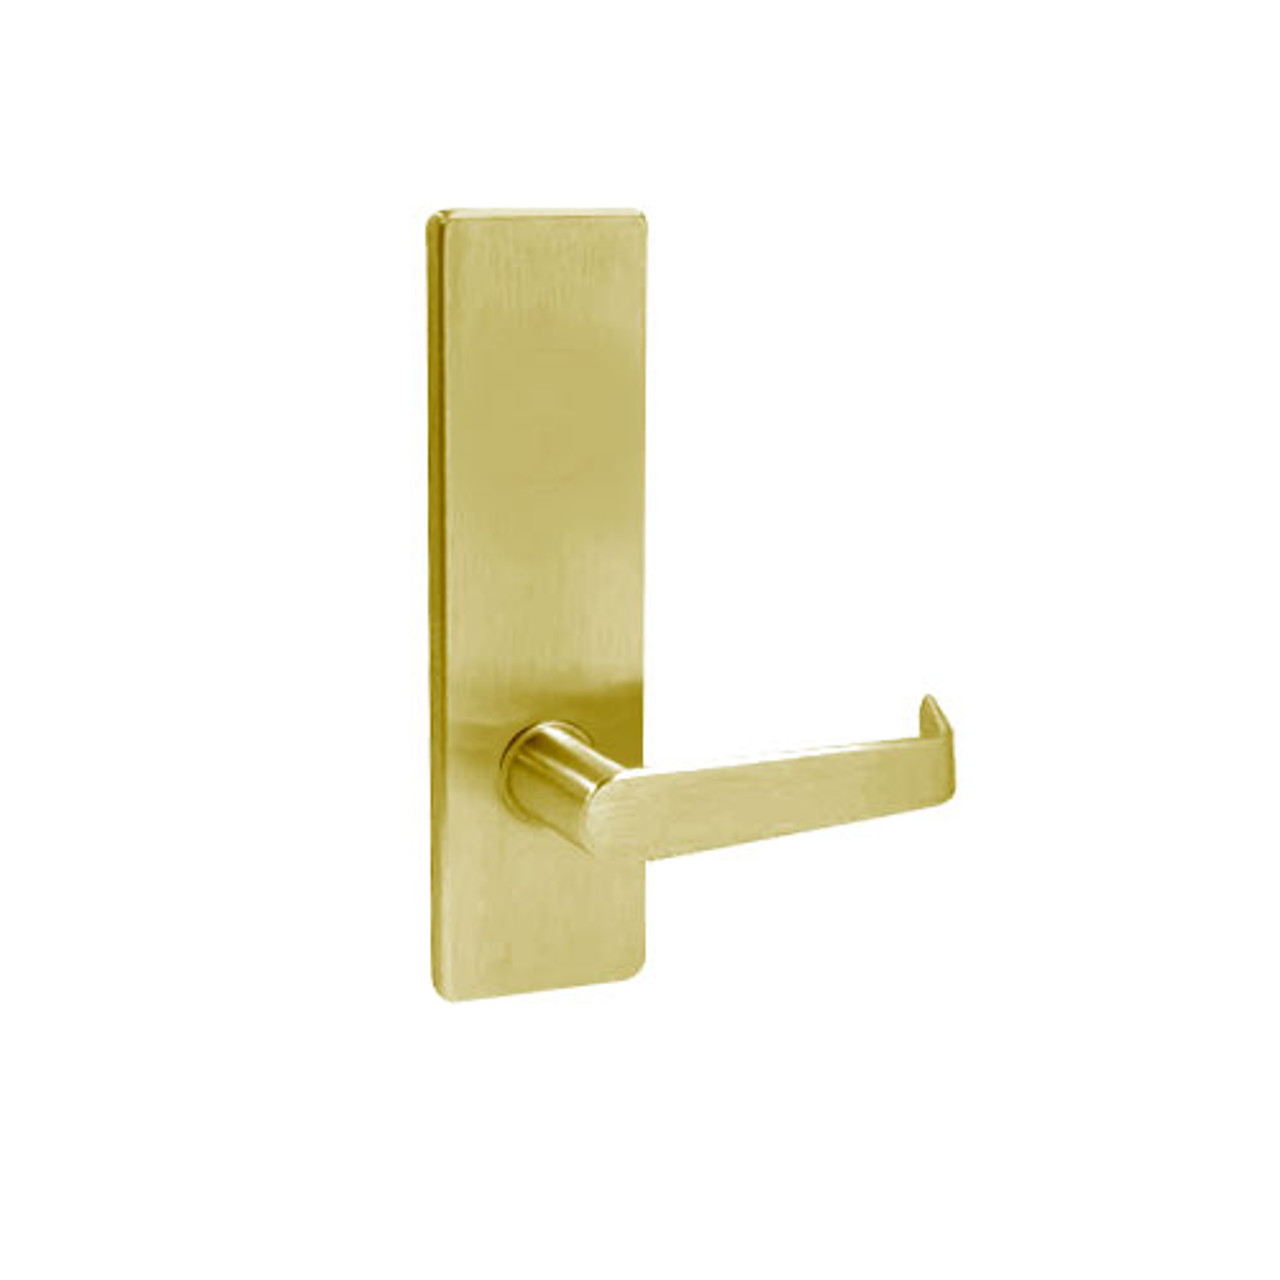 MA311-DN-606 Falcon Mortise Locks MA Series Privacy DN Lever with Escutcheon Style in Satin Brass Finish